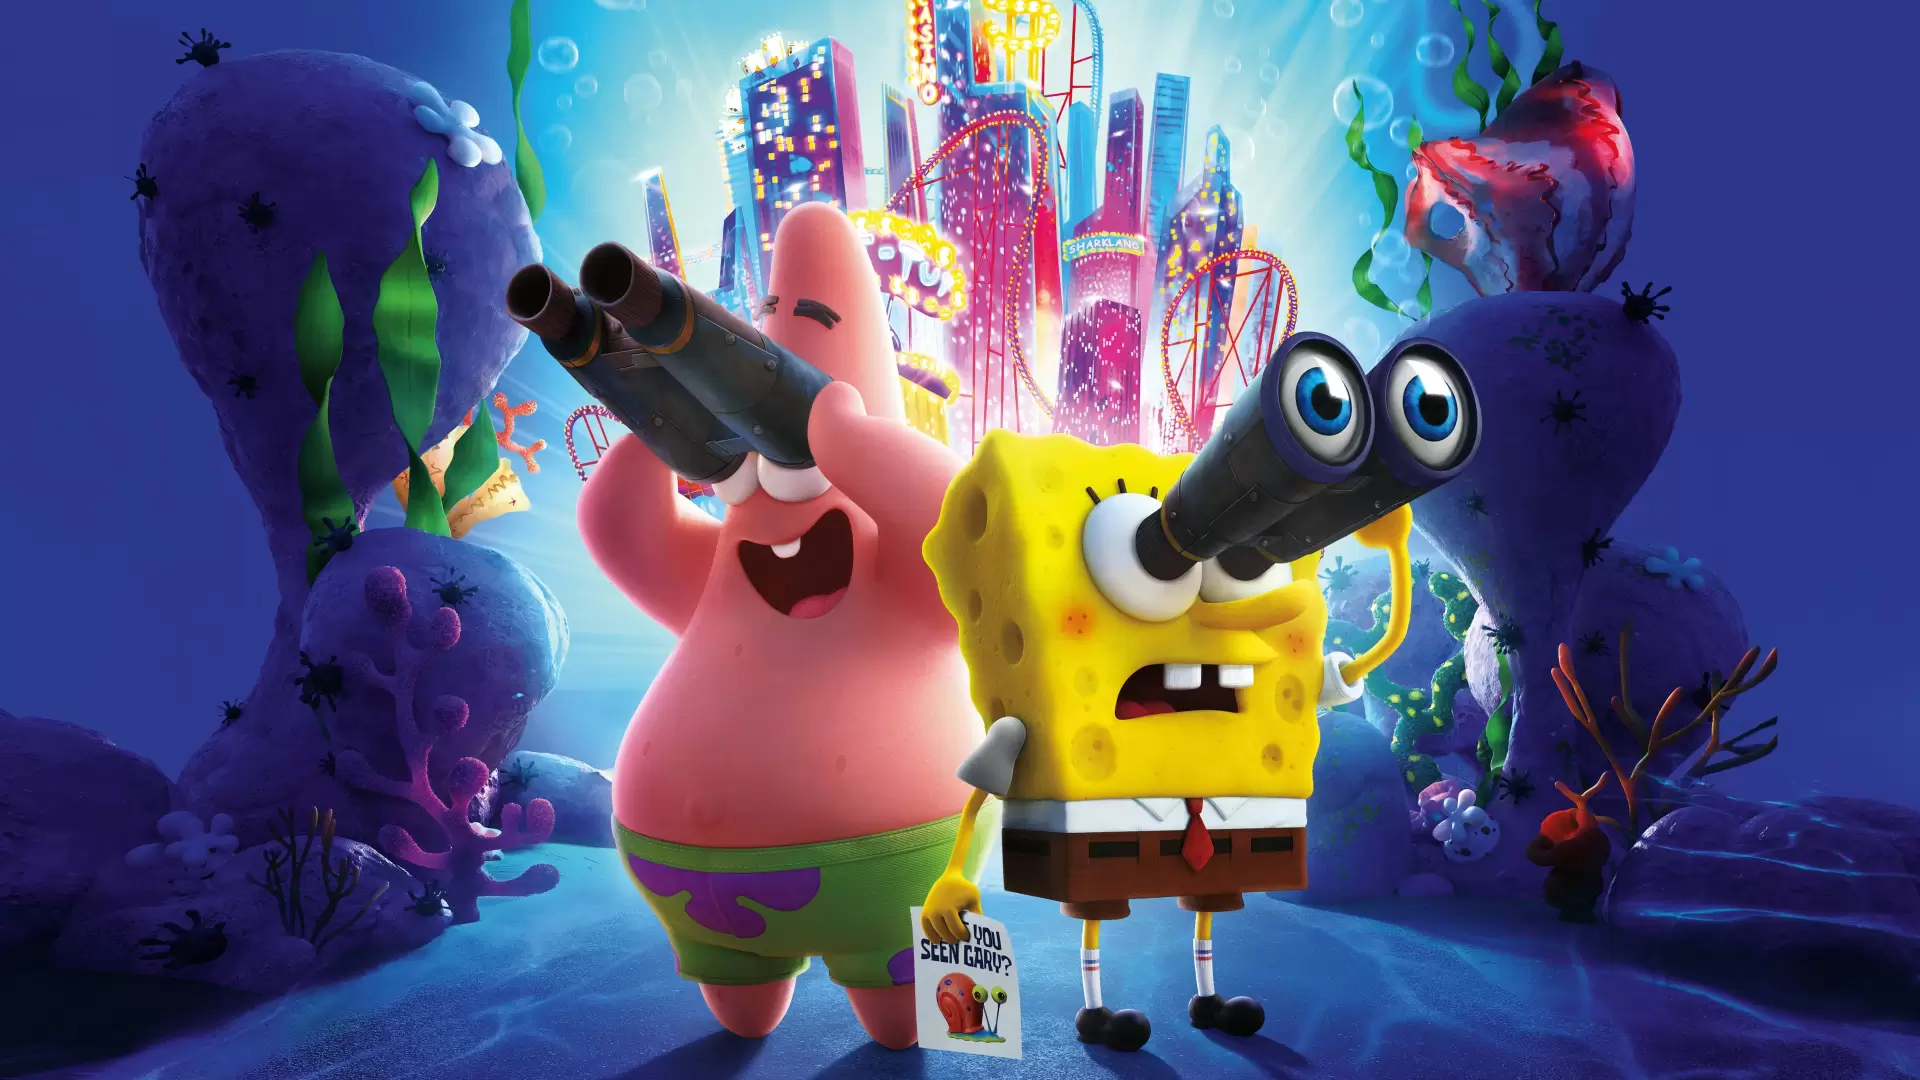 دانلود انیمیشن The SpongeBob Movie: Sponge on the Run 2020 (باب اسفنجی: باب اسفنجی در حال فرار) با زیرنویس فارسی و تماشای آنلاین